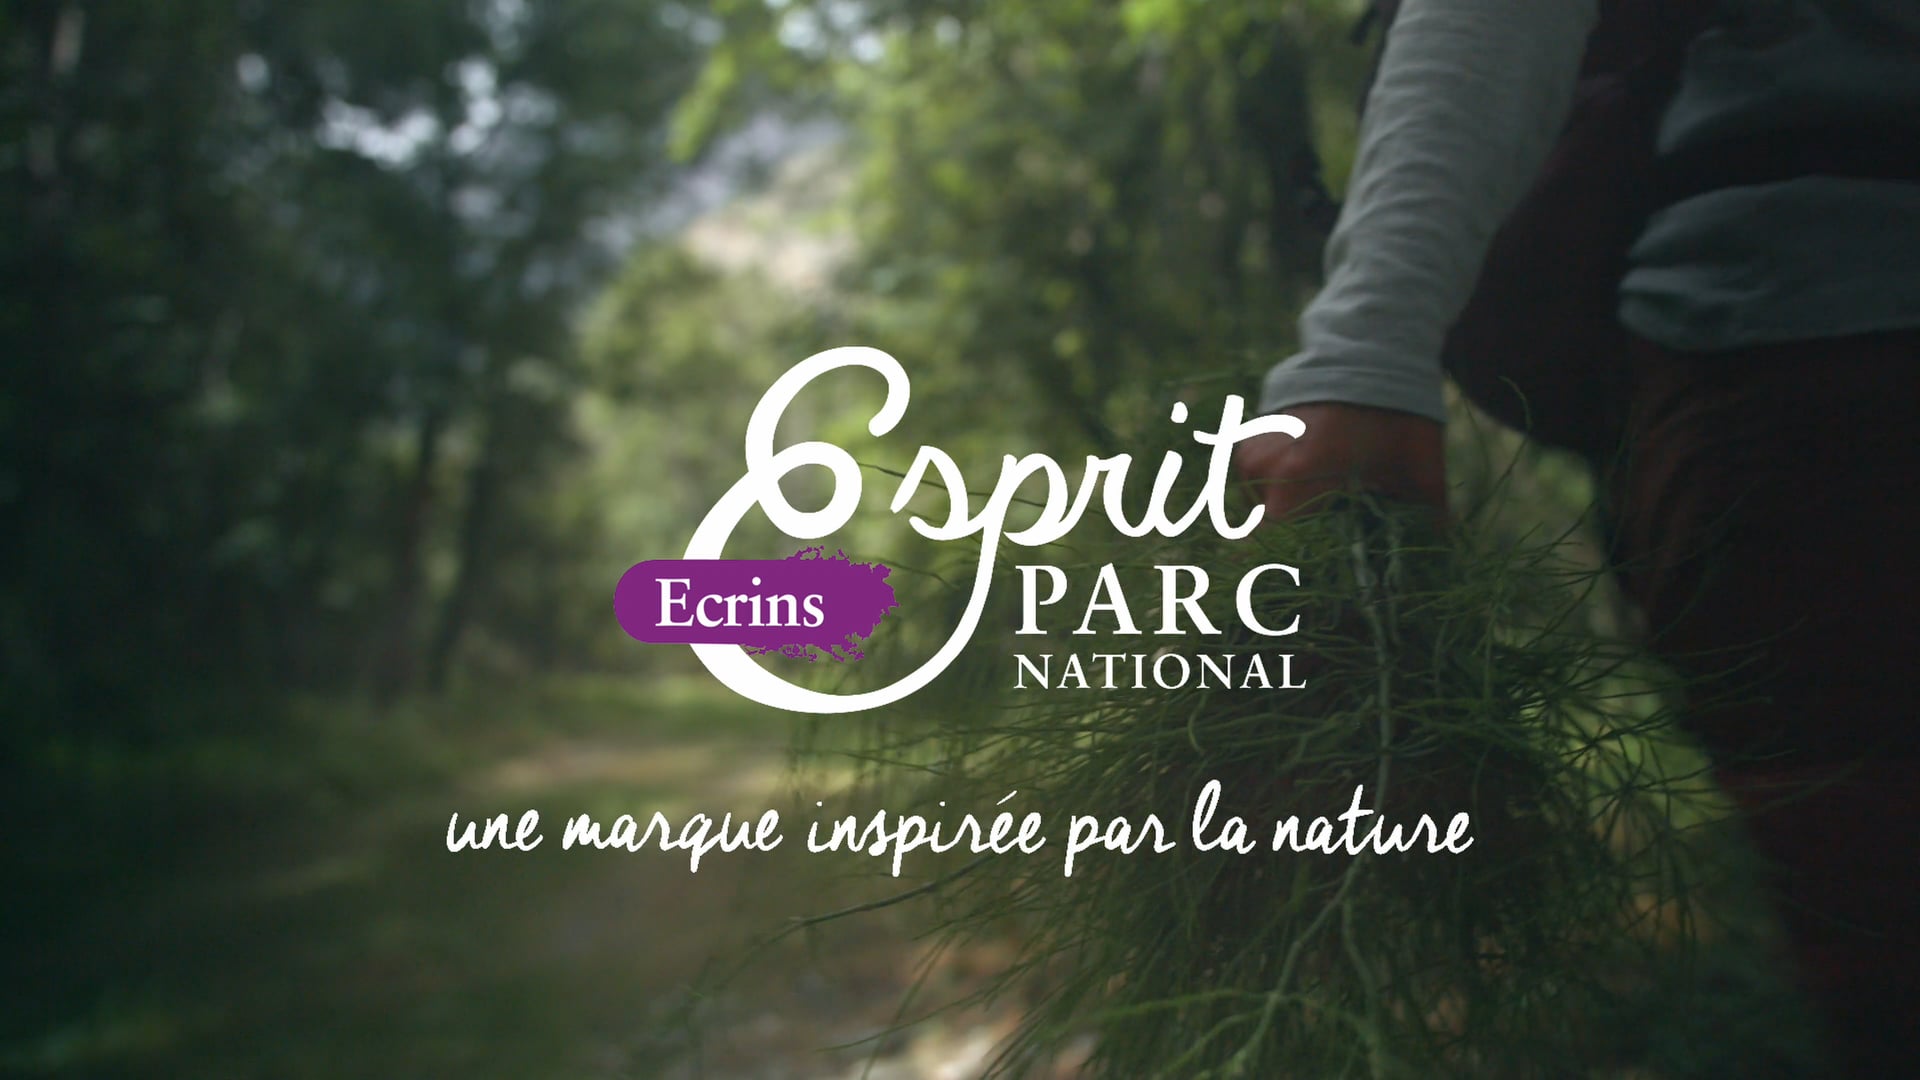 Esprit Parc National – Le portrait de Laetitia